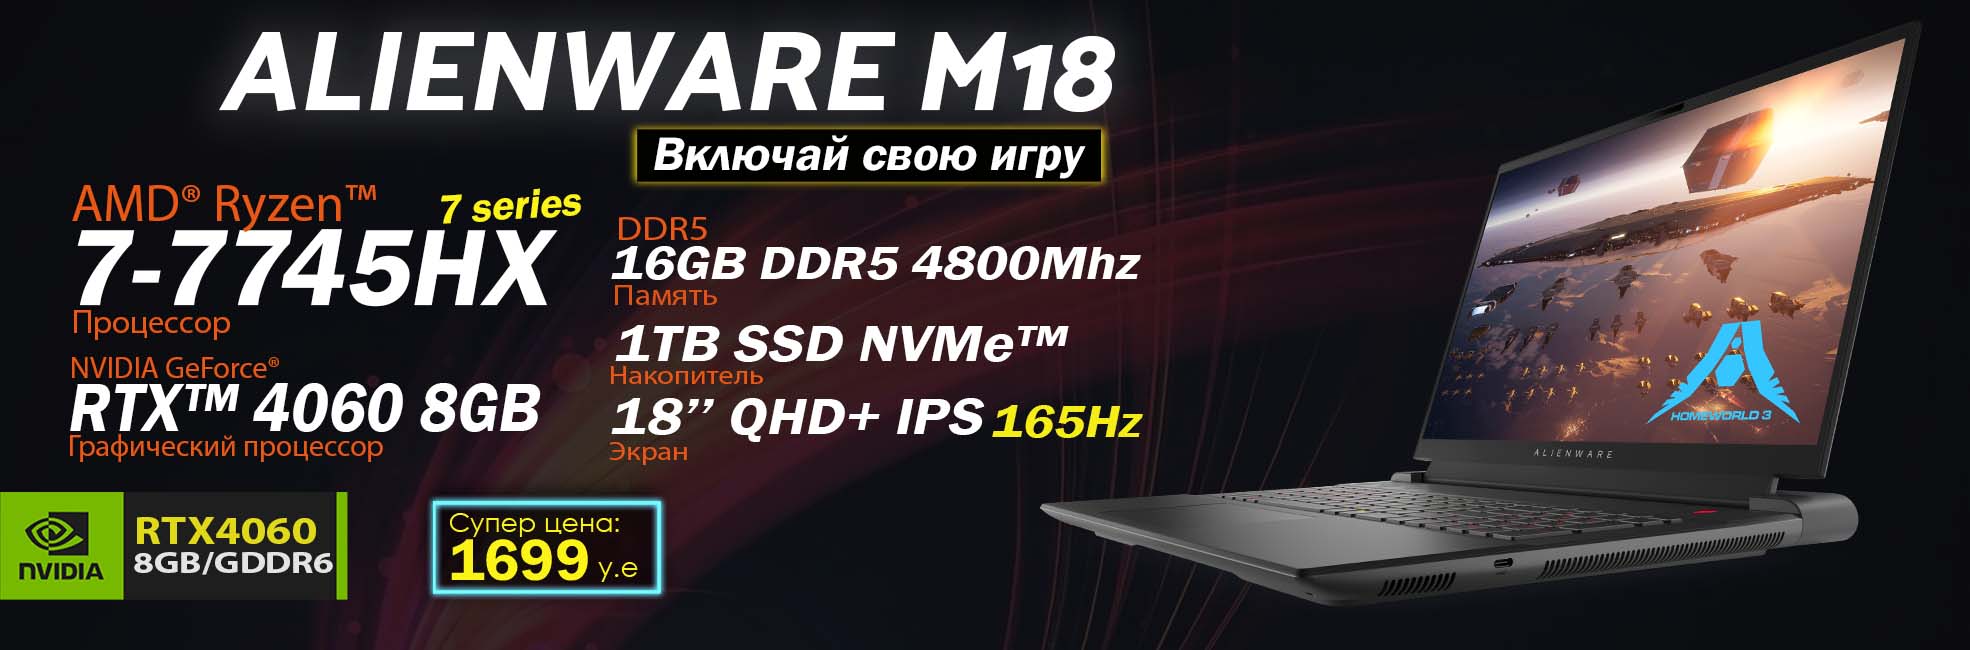 Alienware M18 1970x650 1 Dell Alienware